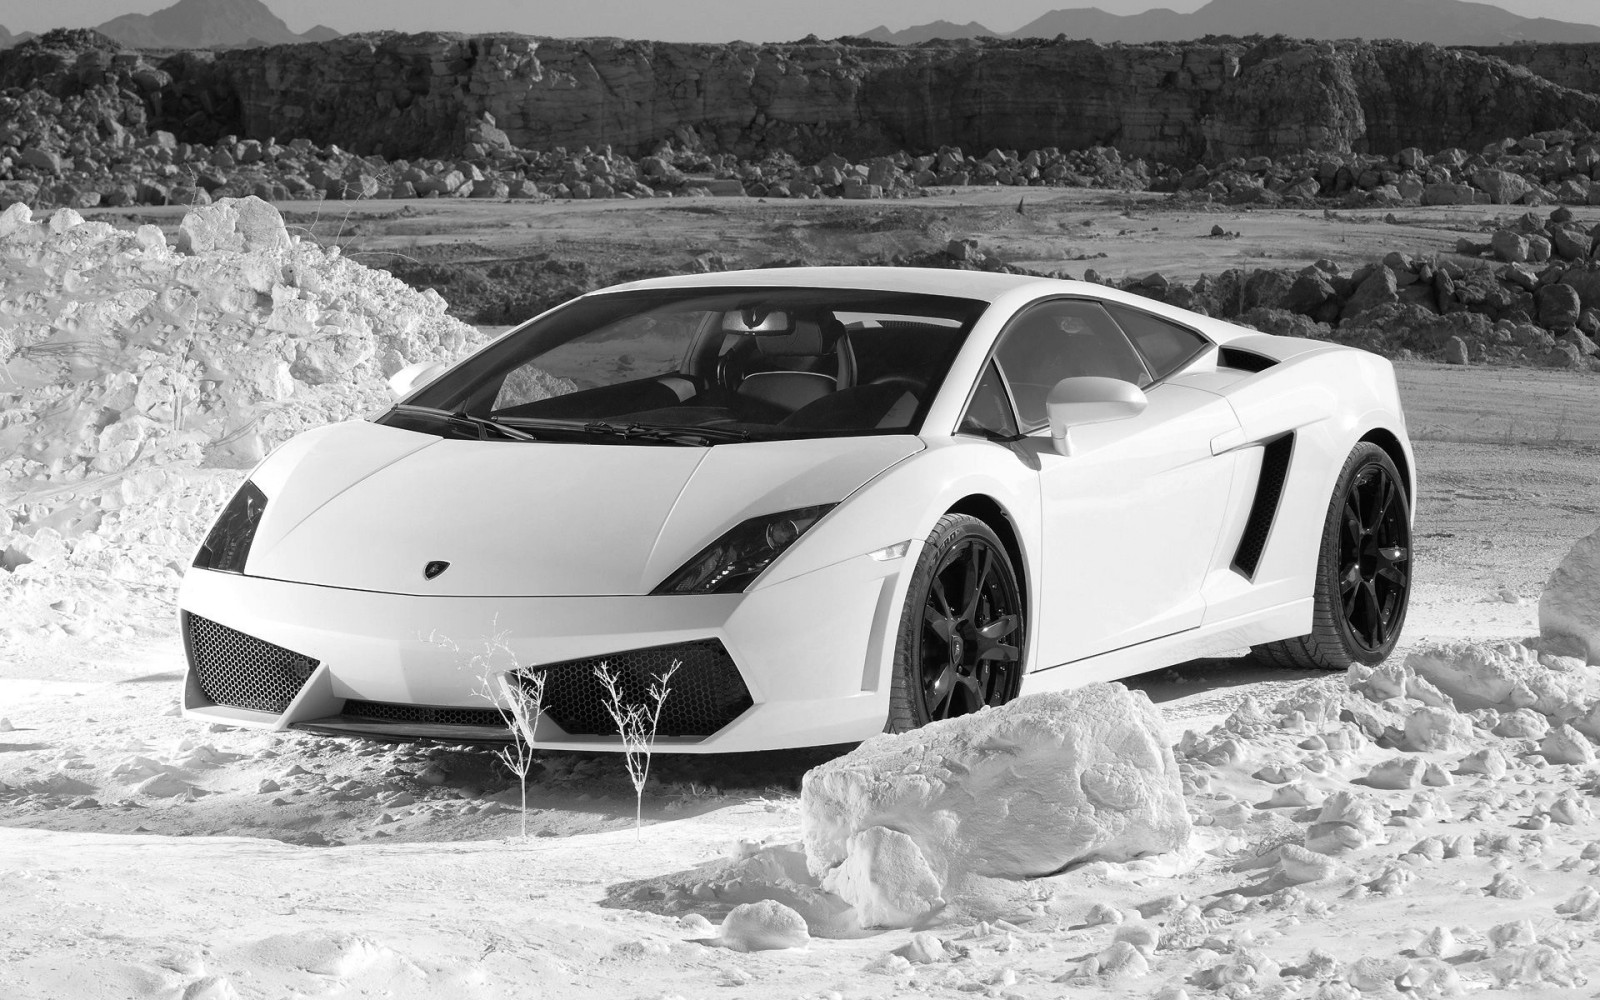 Lamborghini Reventon Black And White Image Amp Pictures Becuo